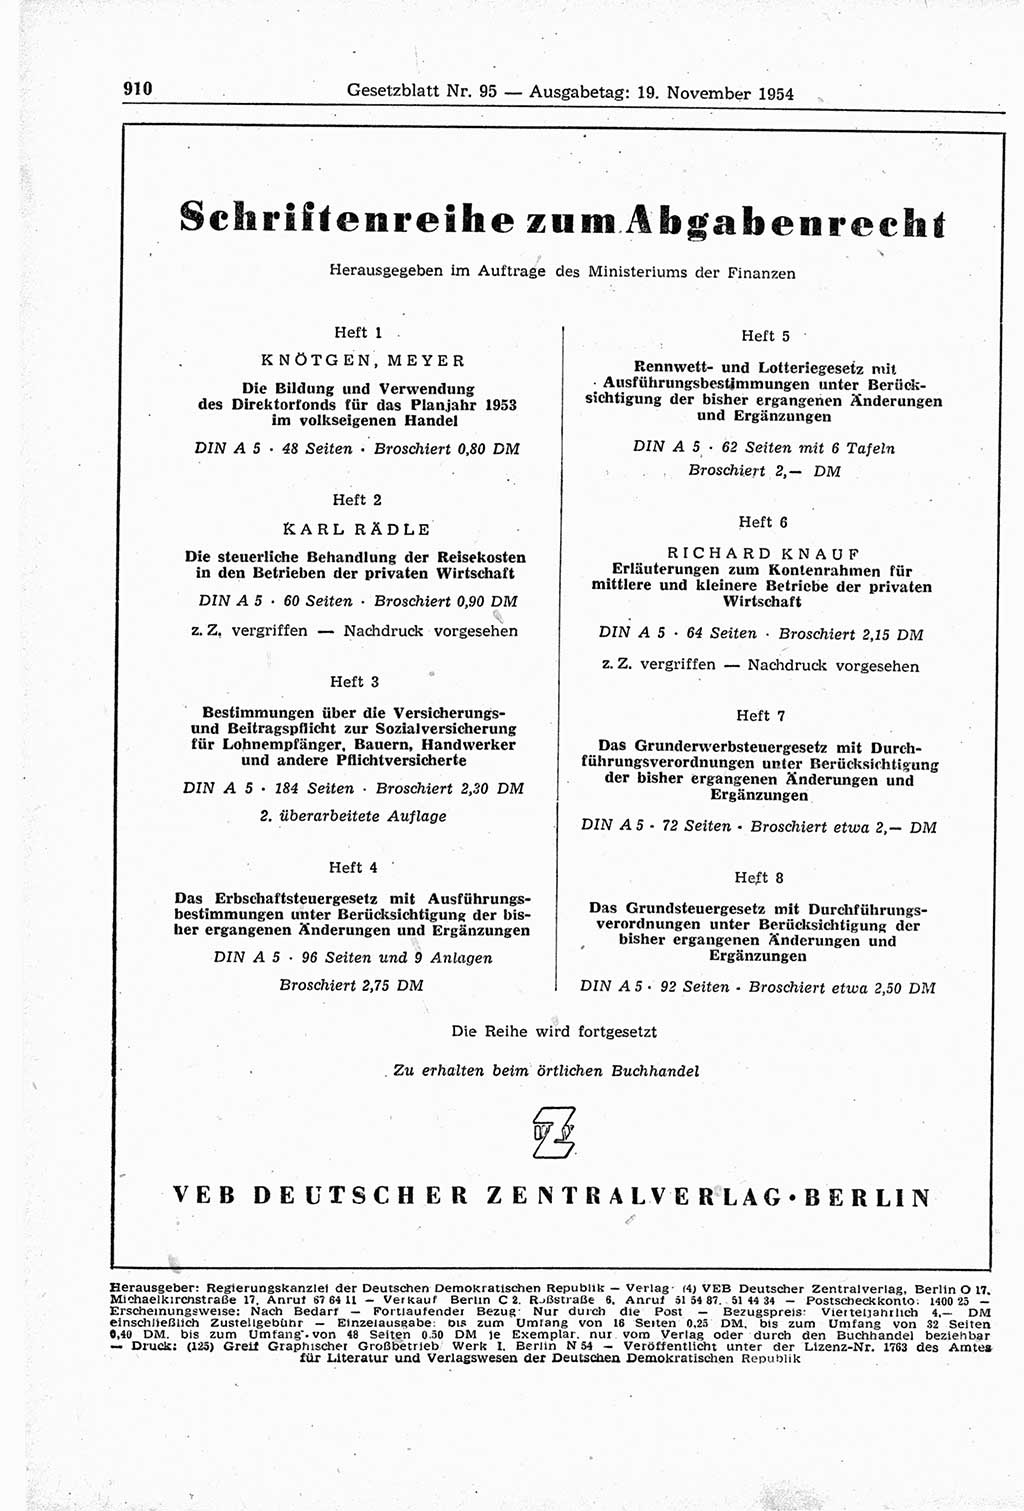 Gesetzblatt (GBl.) der Deutschen Demokratischen Republik (DDR) 1954, Seite 910 (GBl. DDR 1954, S. 910)